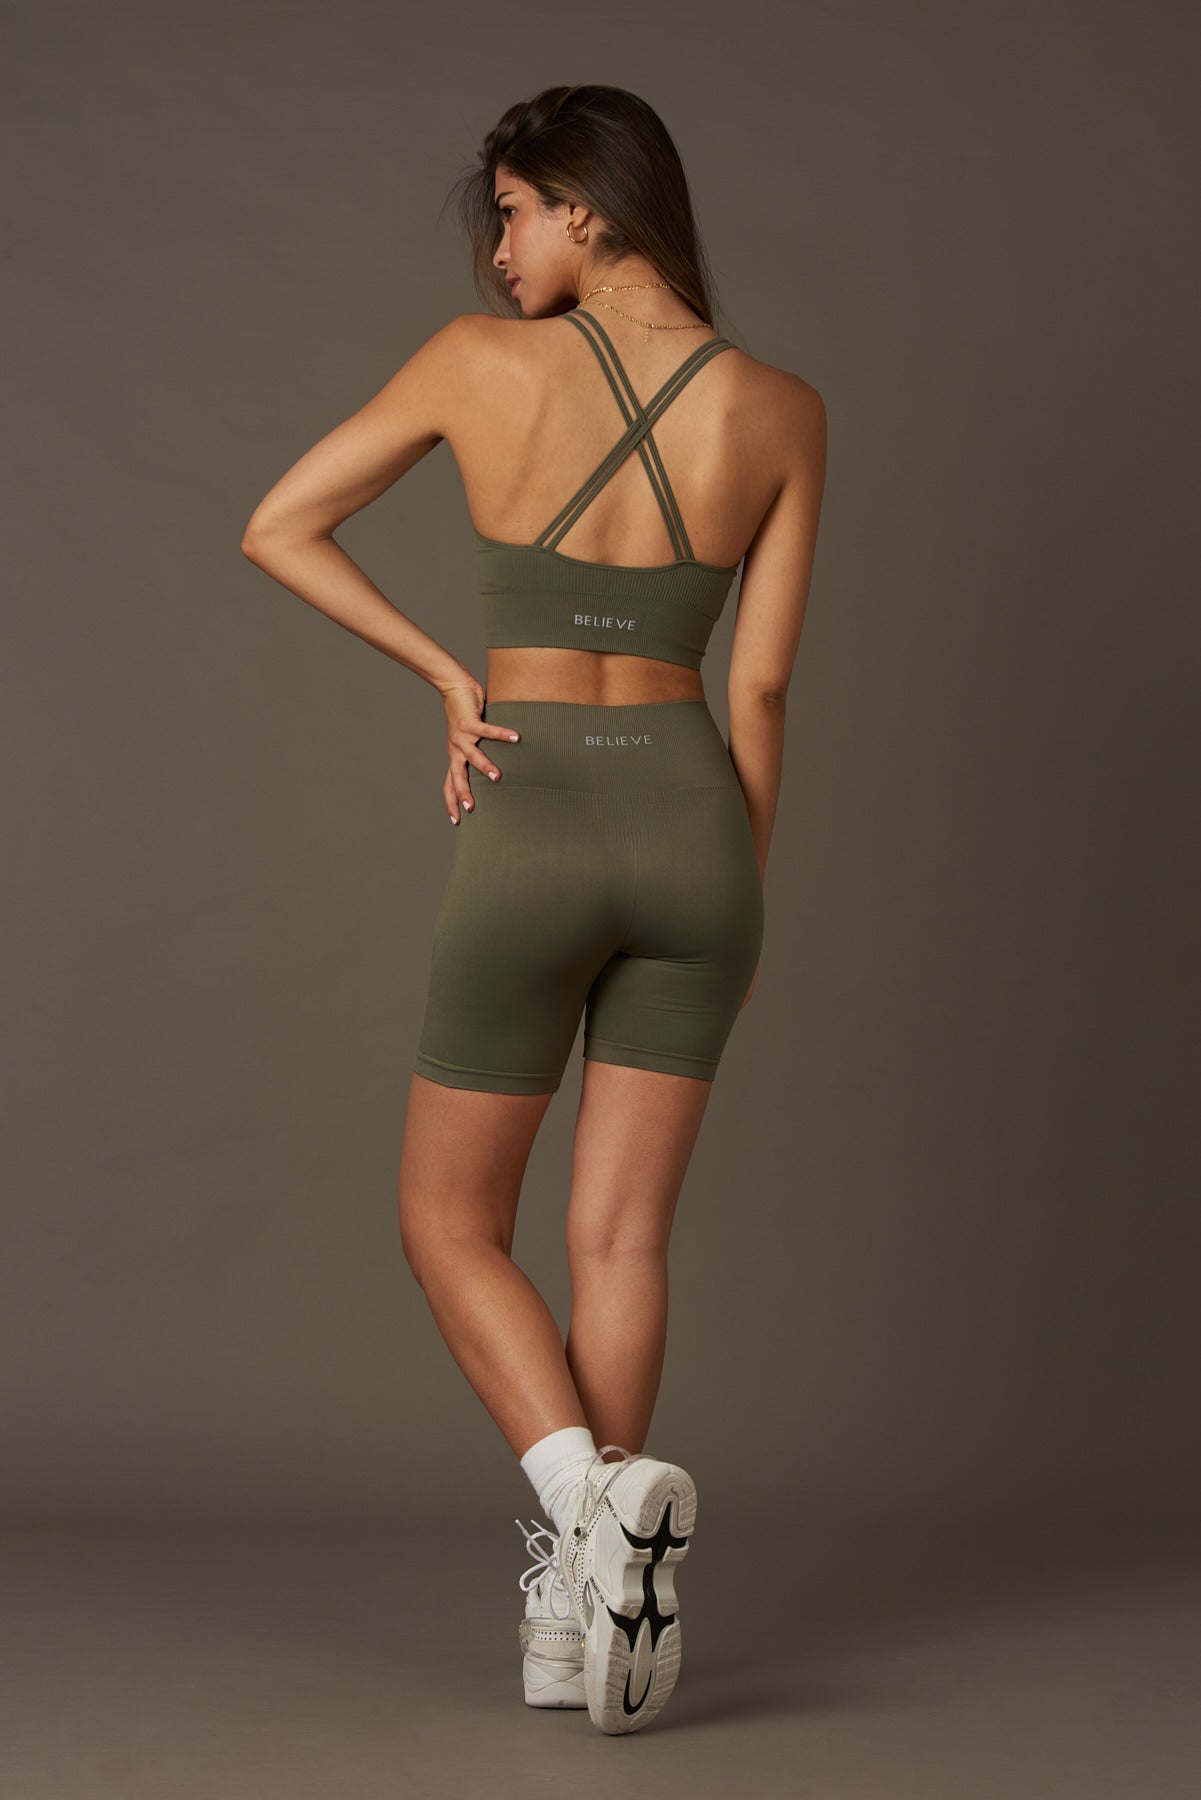 Solar Bra en Caqui-Bras-Tienda Ropa Leggings Yoga Sostenibles Reciclados Mujer On-line Barcelona Believe Athletics Sustainable Recycled Yoga Clothes